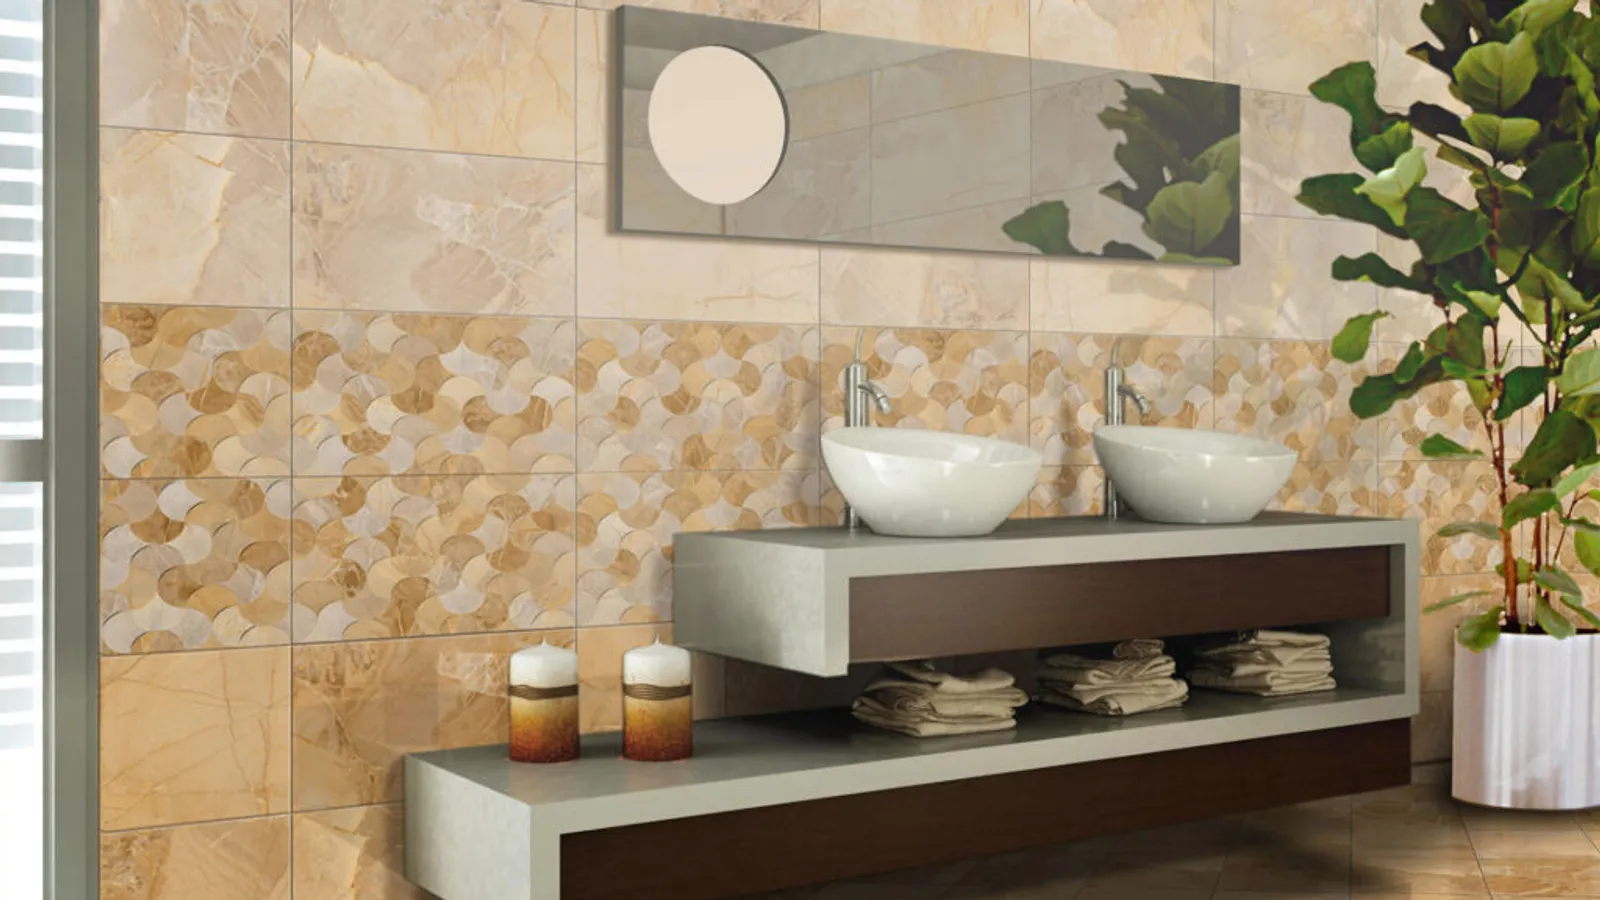 8 Desain Keramik Kamar Mandi yang Cocok Buat Dinding dan Lantai